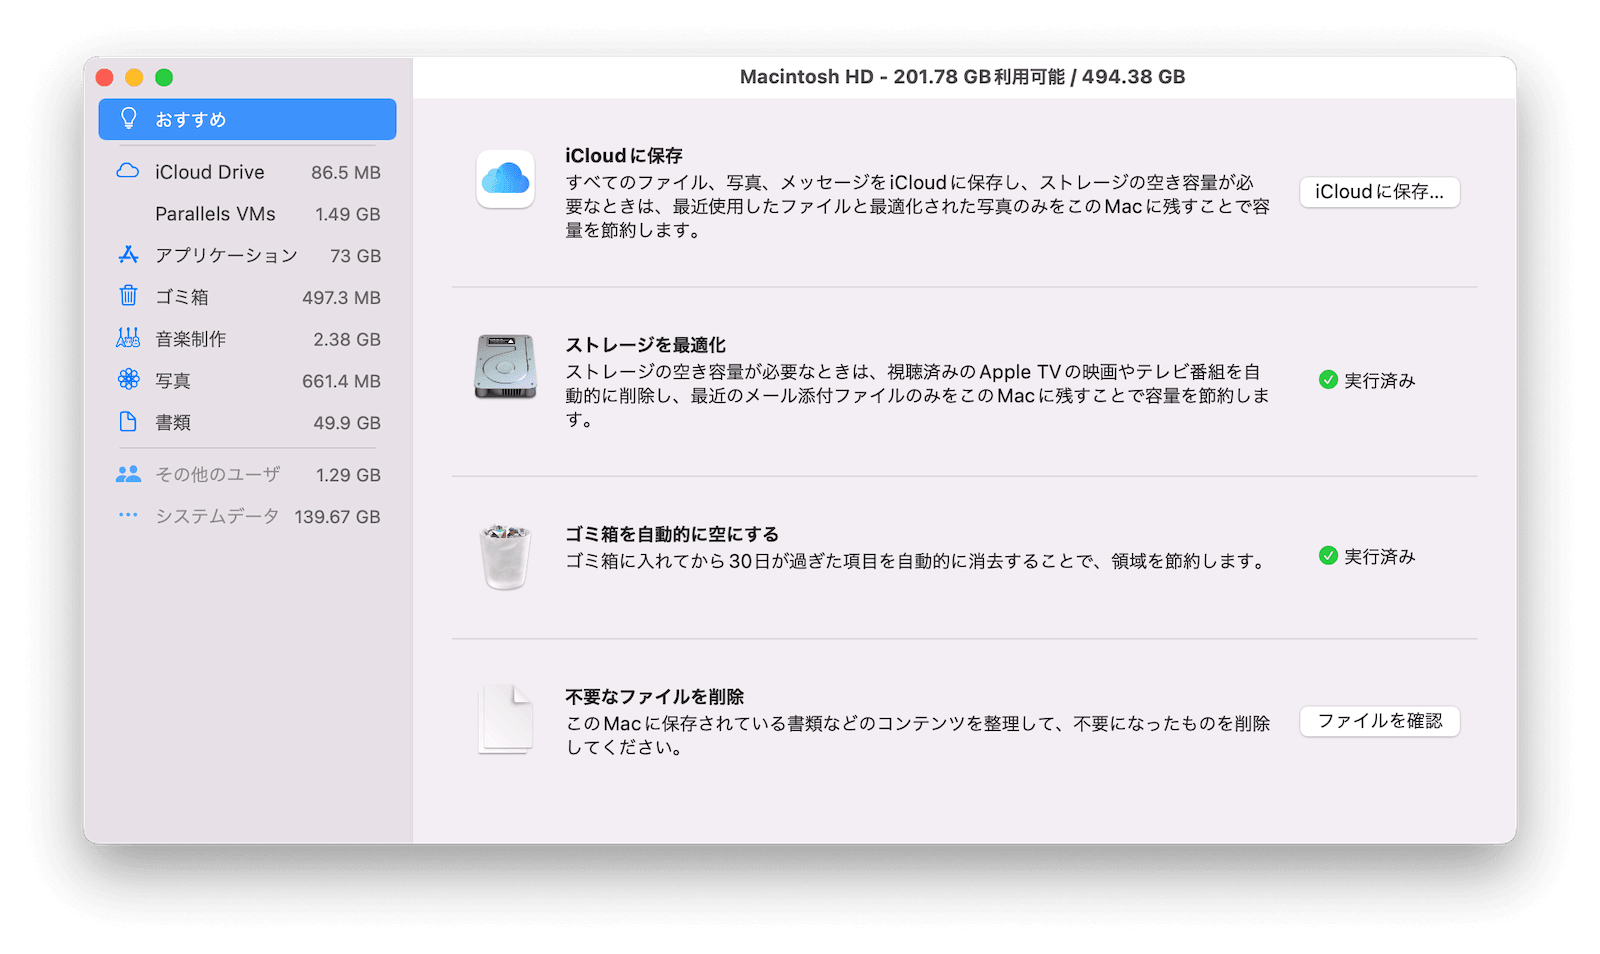 optimize-mac-storage.png